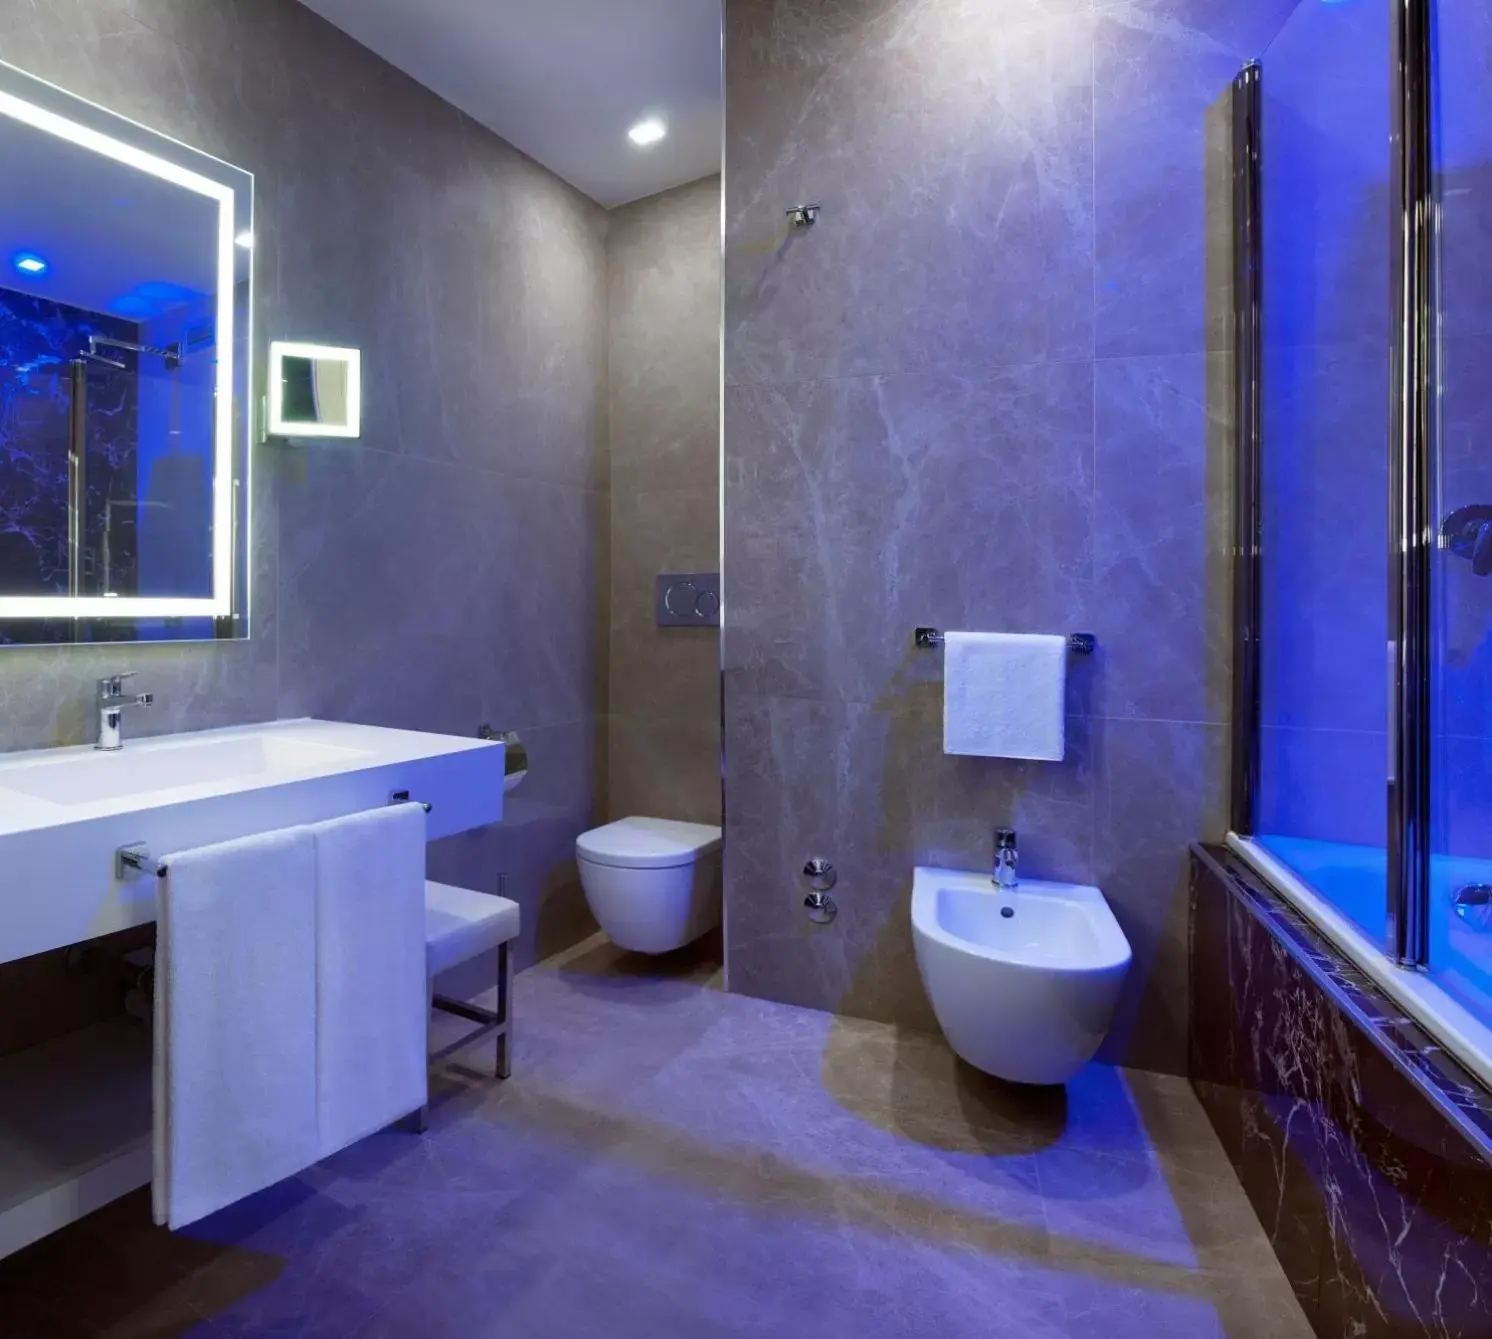 Bathroom in Radisson Blu GHR Rome